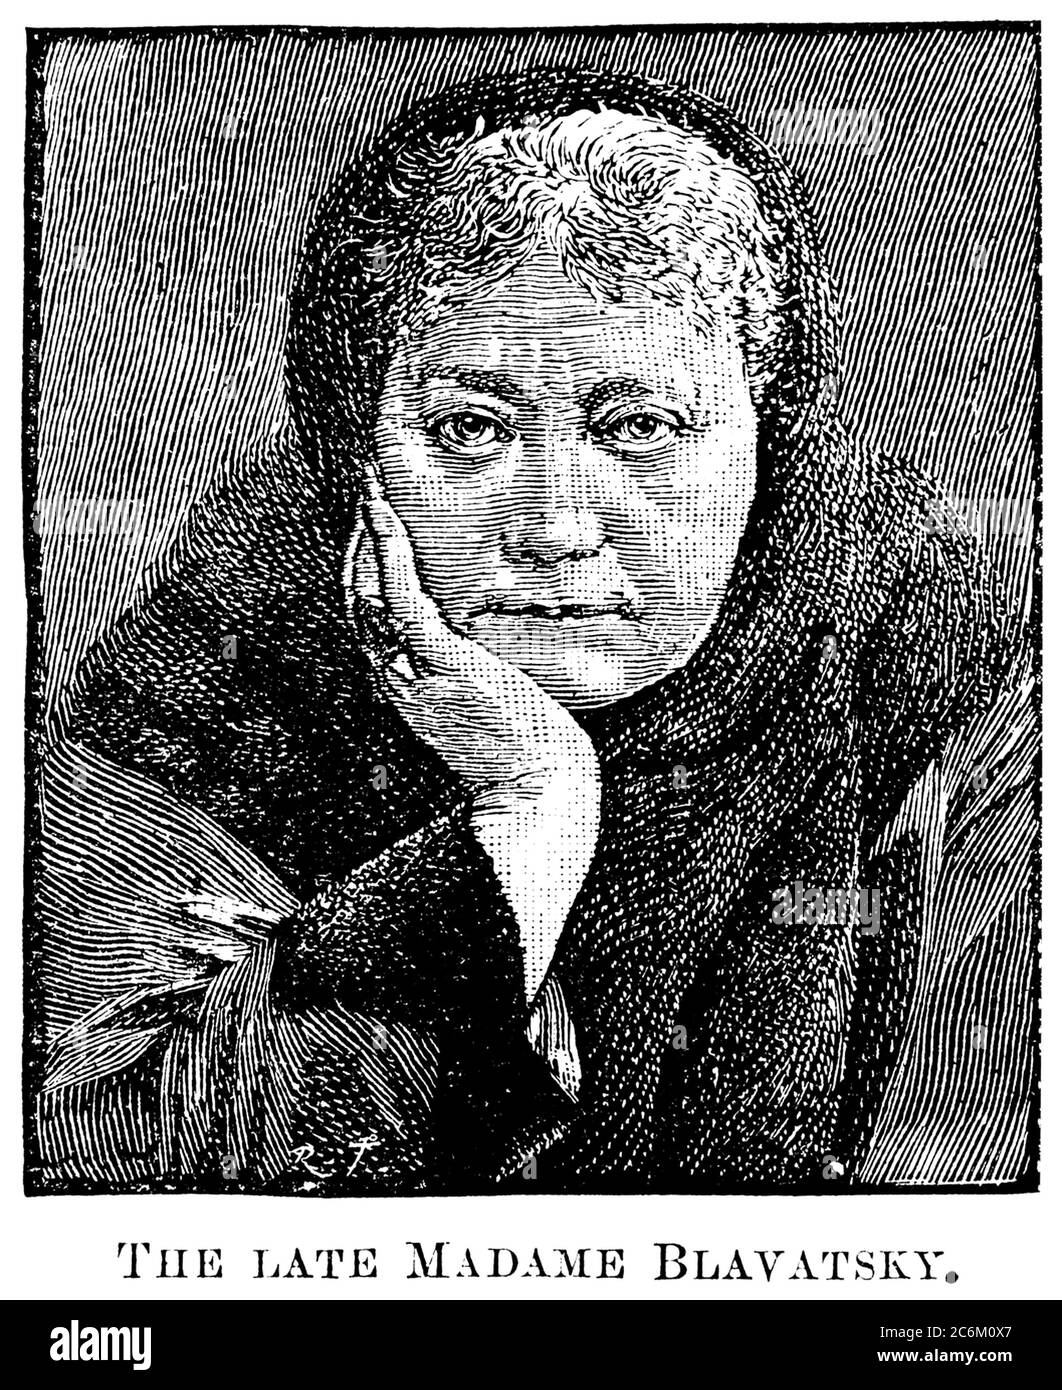 1890 c.. , USA : la signora helena Petrovna BLAVATSKY von Hahn (1831 - 1891), nata in russia. Celebrata donna Teosopista , filosofona , occultista, mistico , viaggiatore e scrittore spiritualista . Fondatore DELLA SOCIETÀ TEOSOFICA nel 1875 . - MEDIUM - Medianità - sedute spiritiche - spiritualism - teosophy - OCCULTISMO - OCCULTISTA - OCCULTTO - scruttrice - SCRITTORE - LETTERATURA - LETTERATURA - letterato - PARANORMALE - TEOSOFIA - Teosofia - FILOSOFIA - FILOSOFIA - FILOSOFO - TESOEROESOTERICO - FILOSOFO - TESOESOERICO - FILOSOFO - TESOERICO - TESTERO - TESOERO - TESOSIOERO - TERO - TESOSIOTERIA - TESO - incisione - illustrazione - illustri Foto Stock